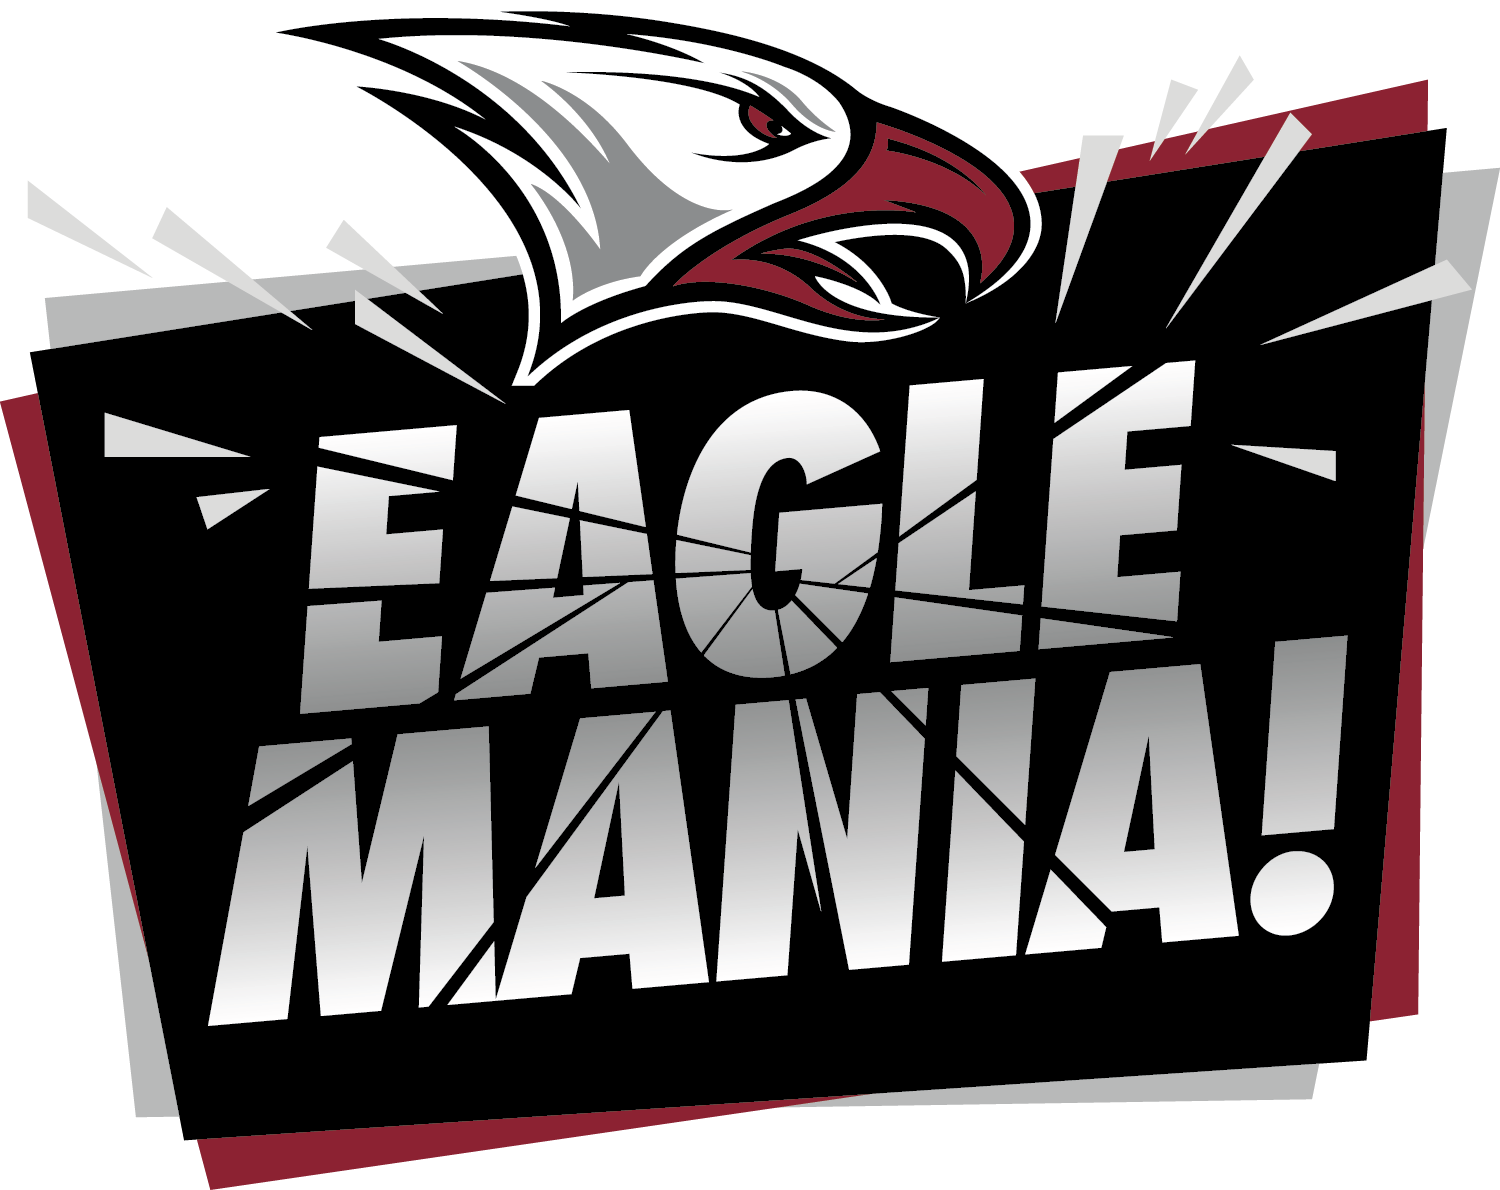 The NCCU Eagle Mania logo